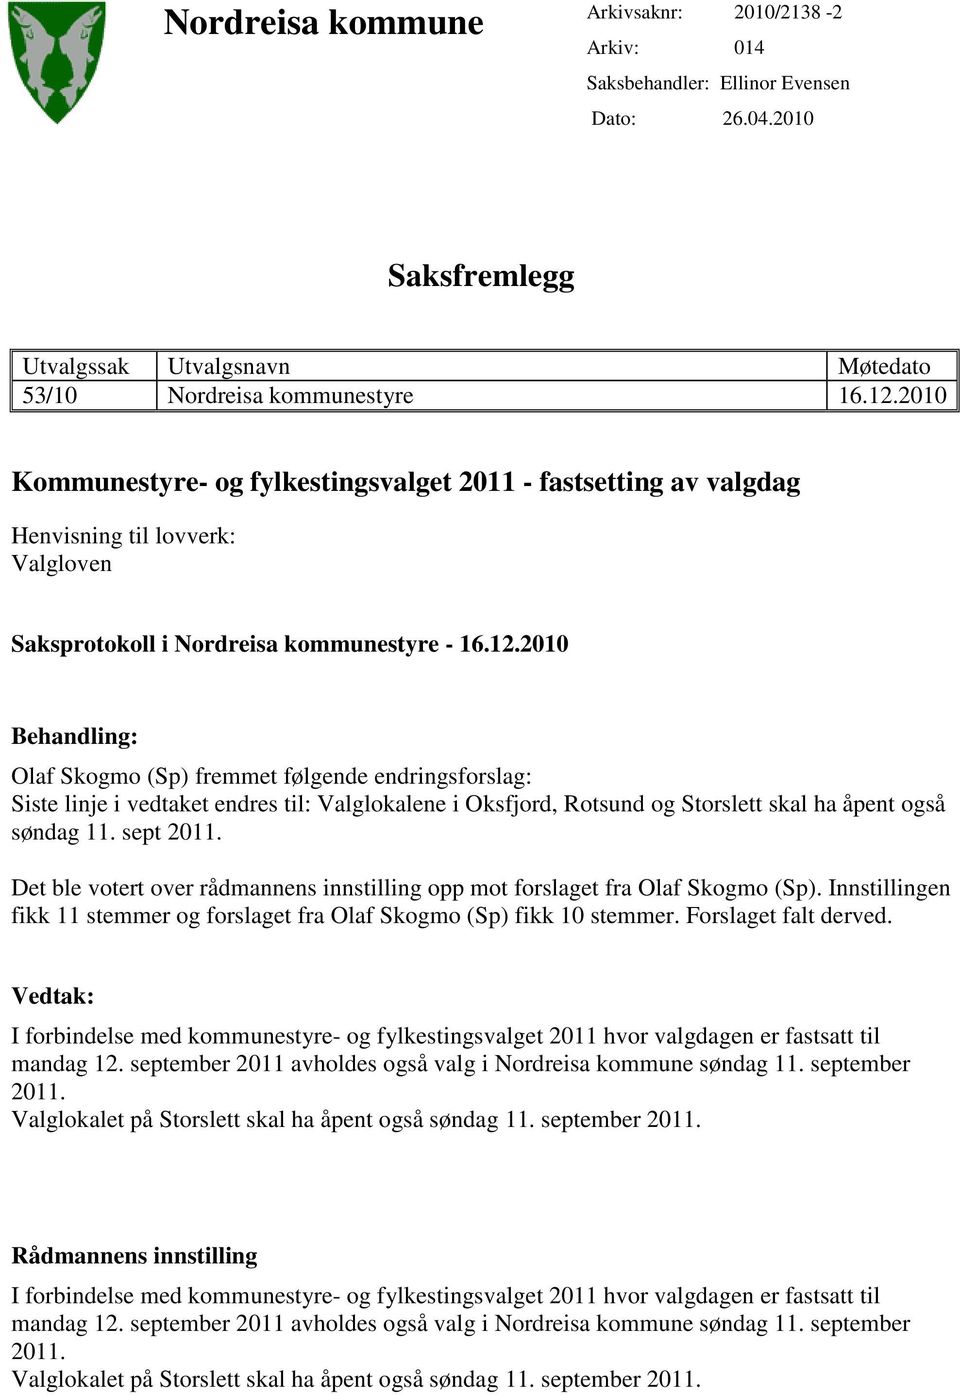 2010 Behandling: Olaf Skogmo (Sp) fremmet følgende endringsforslag: Siste linje i vedtaket endres til: Valglokalene i Oksfjord, Rotsund og Storslett skal ha åpent også søndag 11. sept 2011.